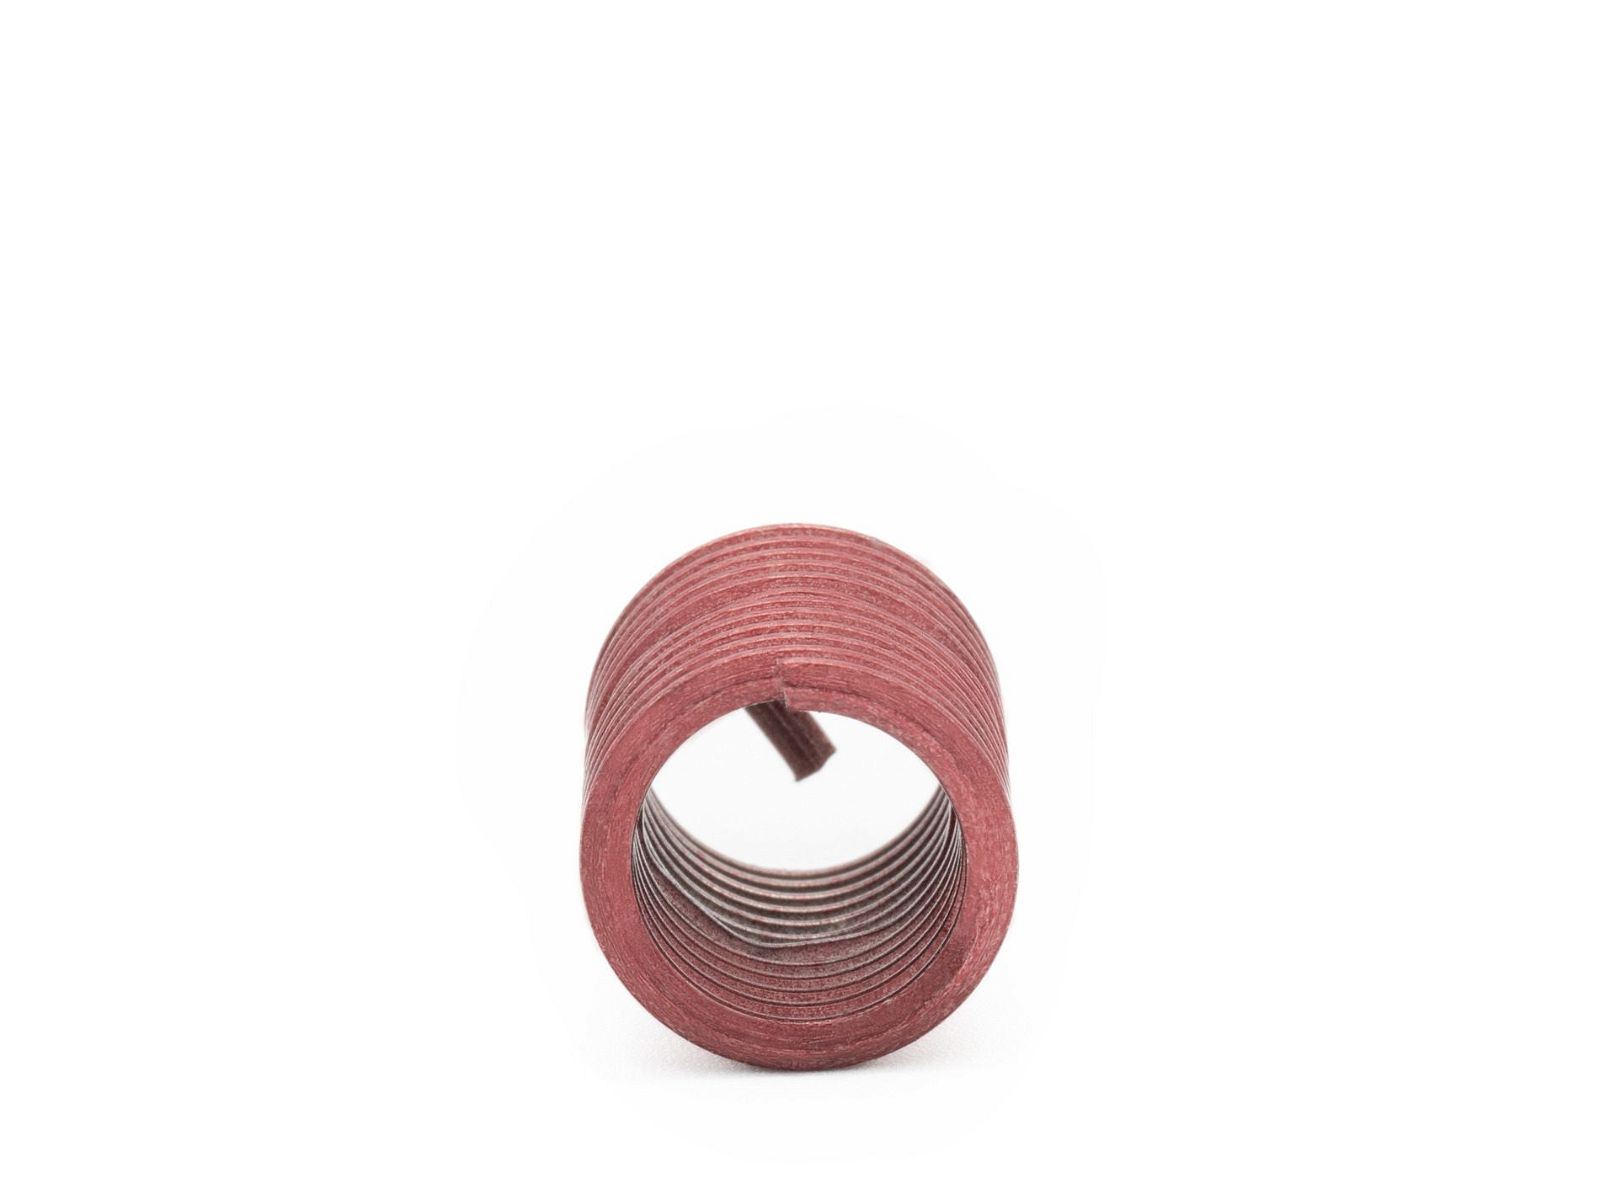 BaerCoil Drahtgewindeeinsätze UNC No. 6 x 32 - 2,0 D (7,01 mm) - screw grip (schraubensichernd) - 100 Stück